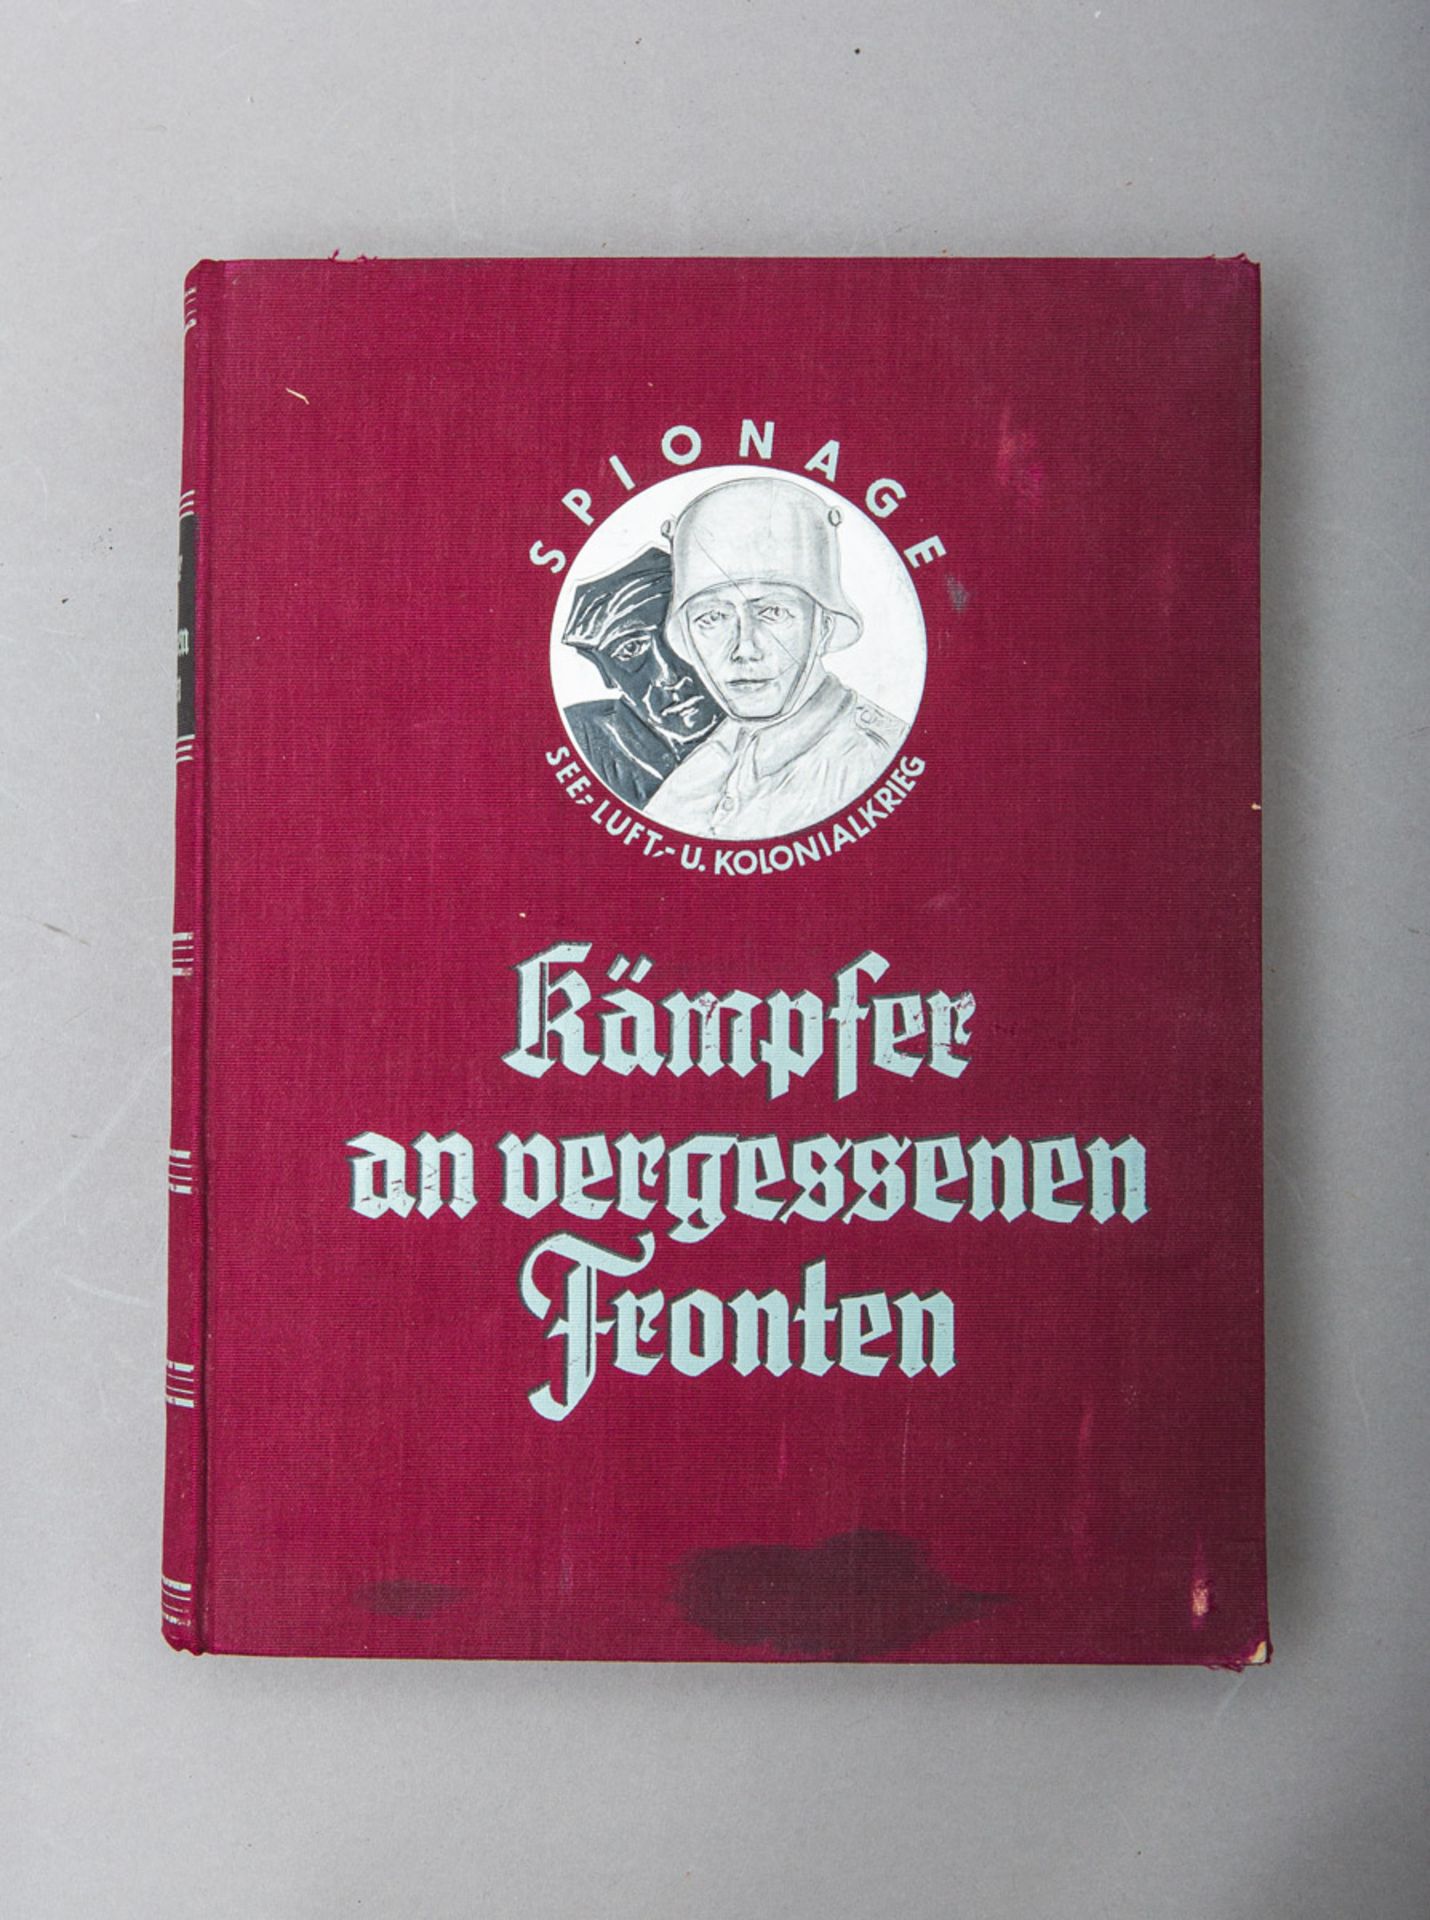 Foerster, Wolfgang (Hrsg.), "Kämpfer an vergessenen Fronten - See-, Luft-, und Kolonialkrieg - Spion